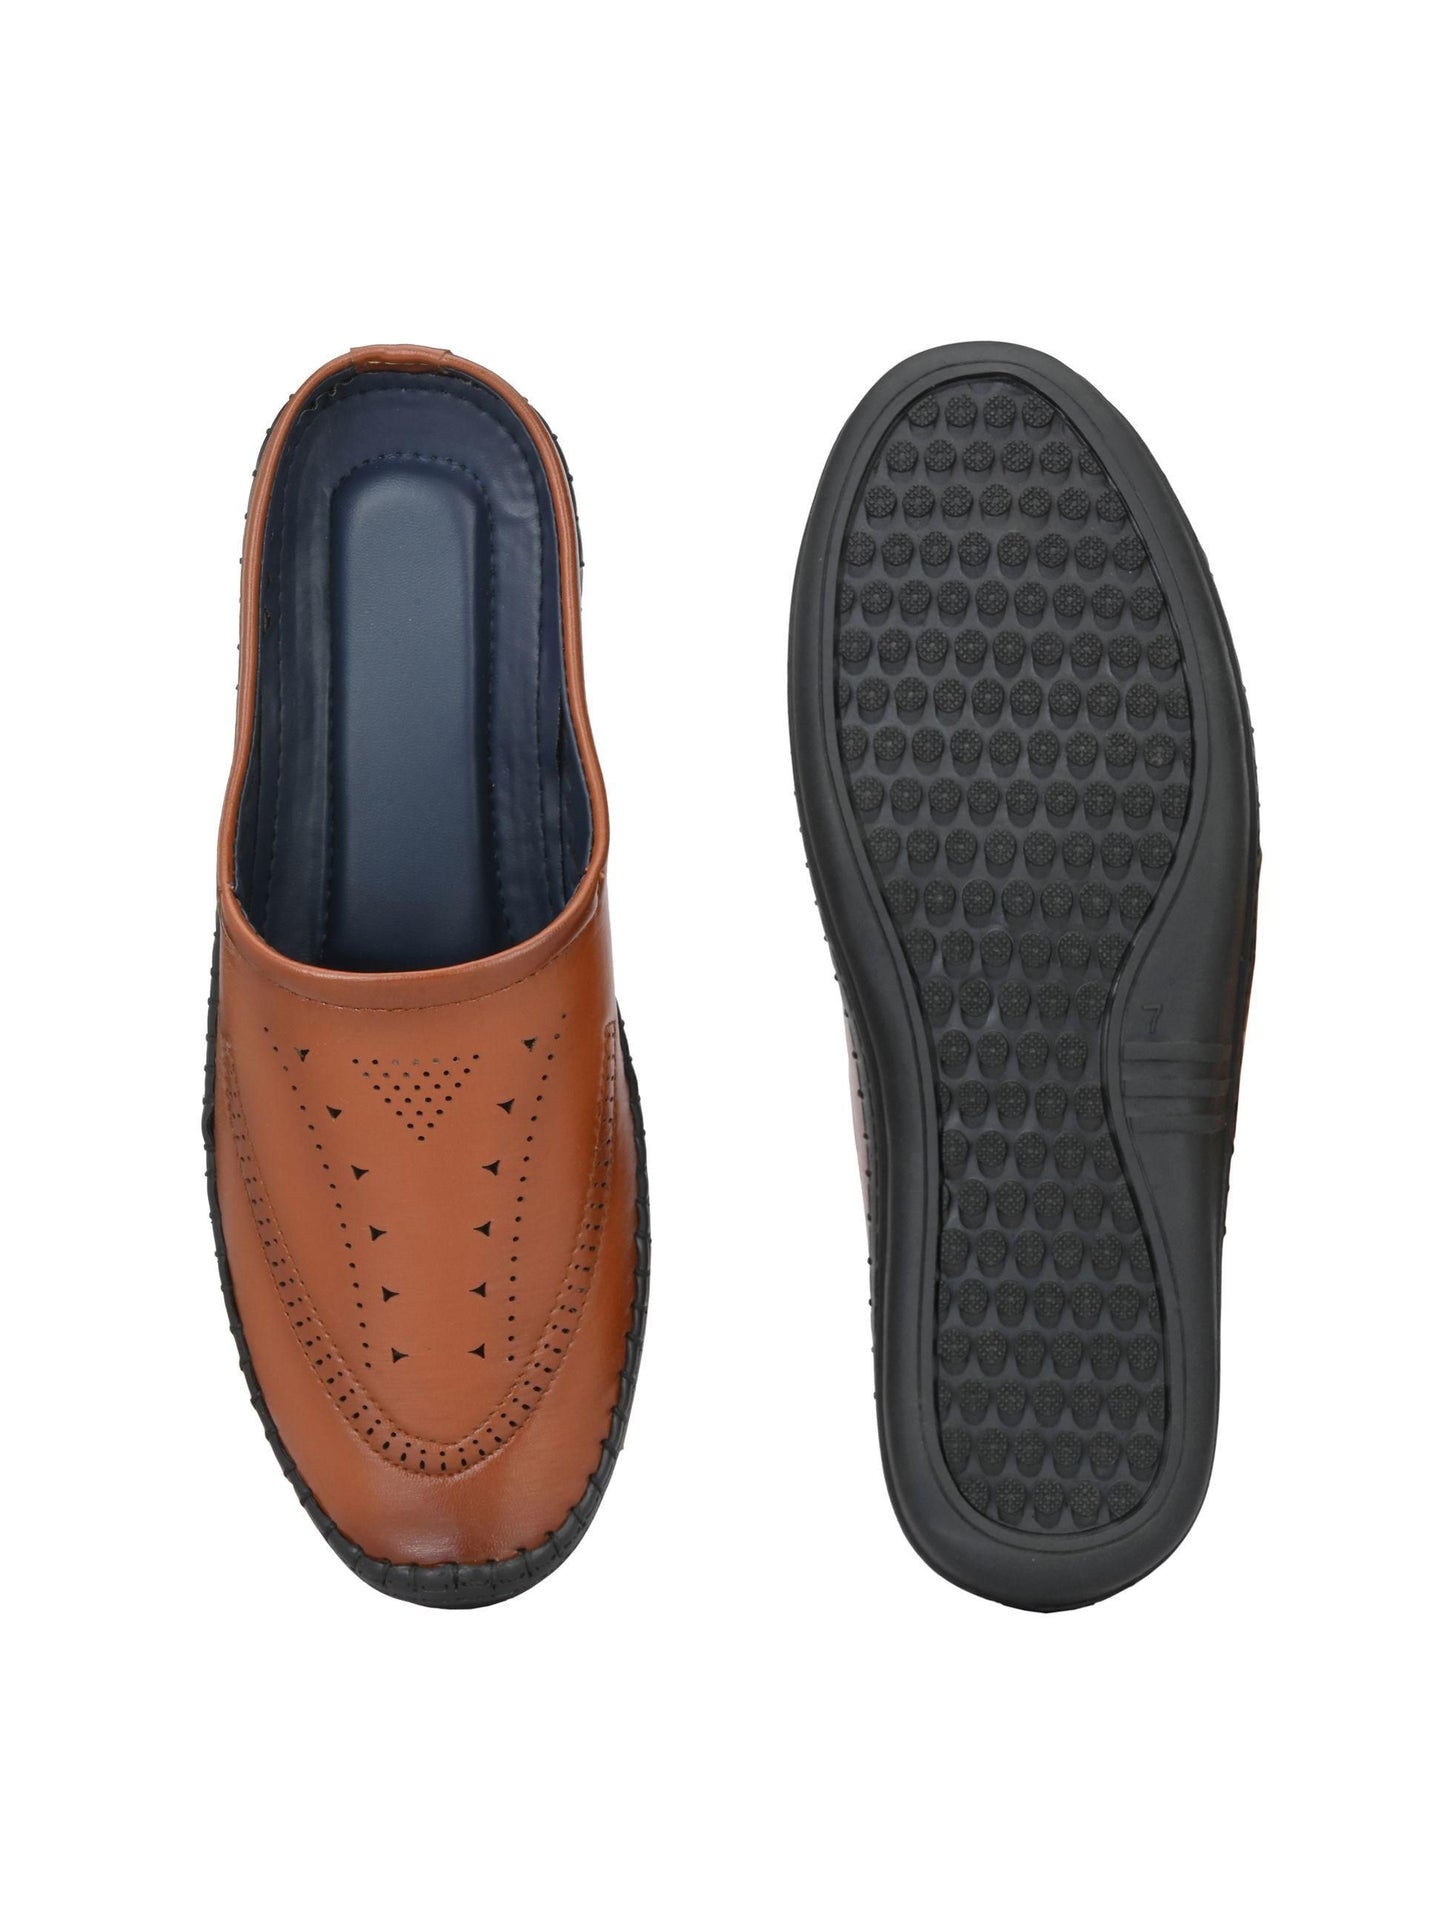 BUCIK Men's Slip-On Sandal